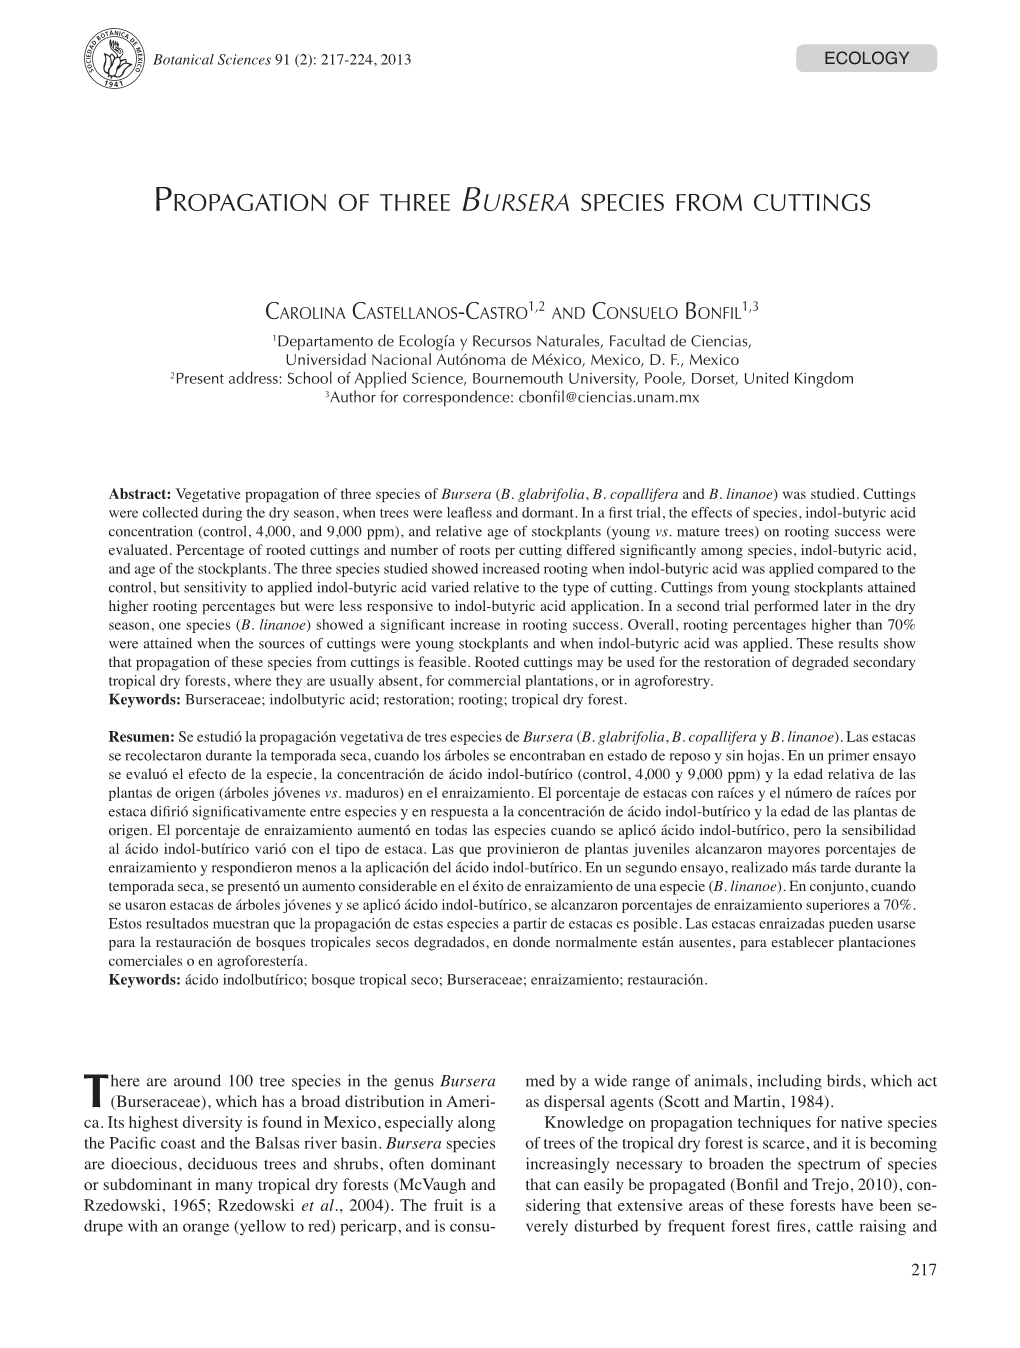 Propagation of Three Bursera Species from Cuttings